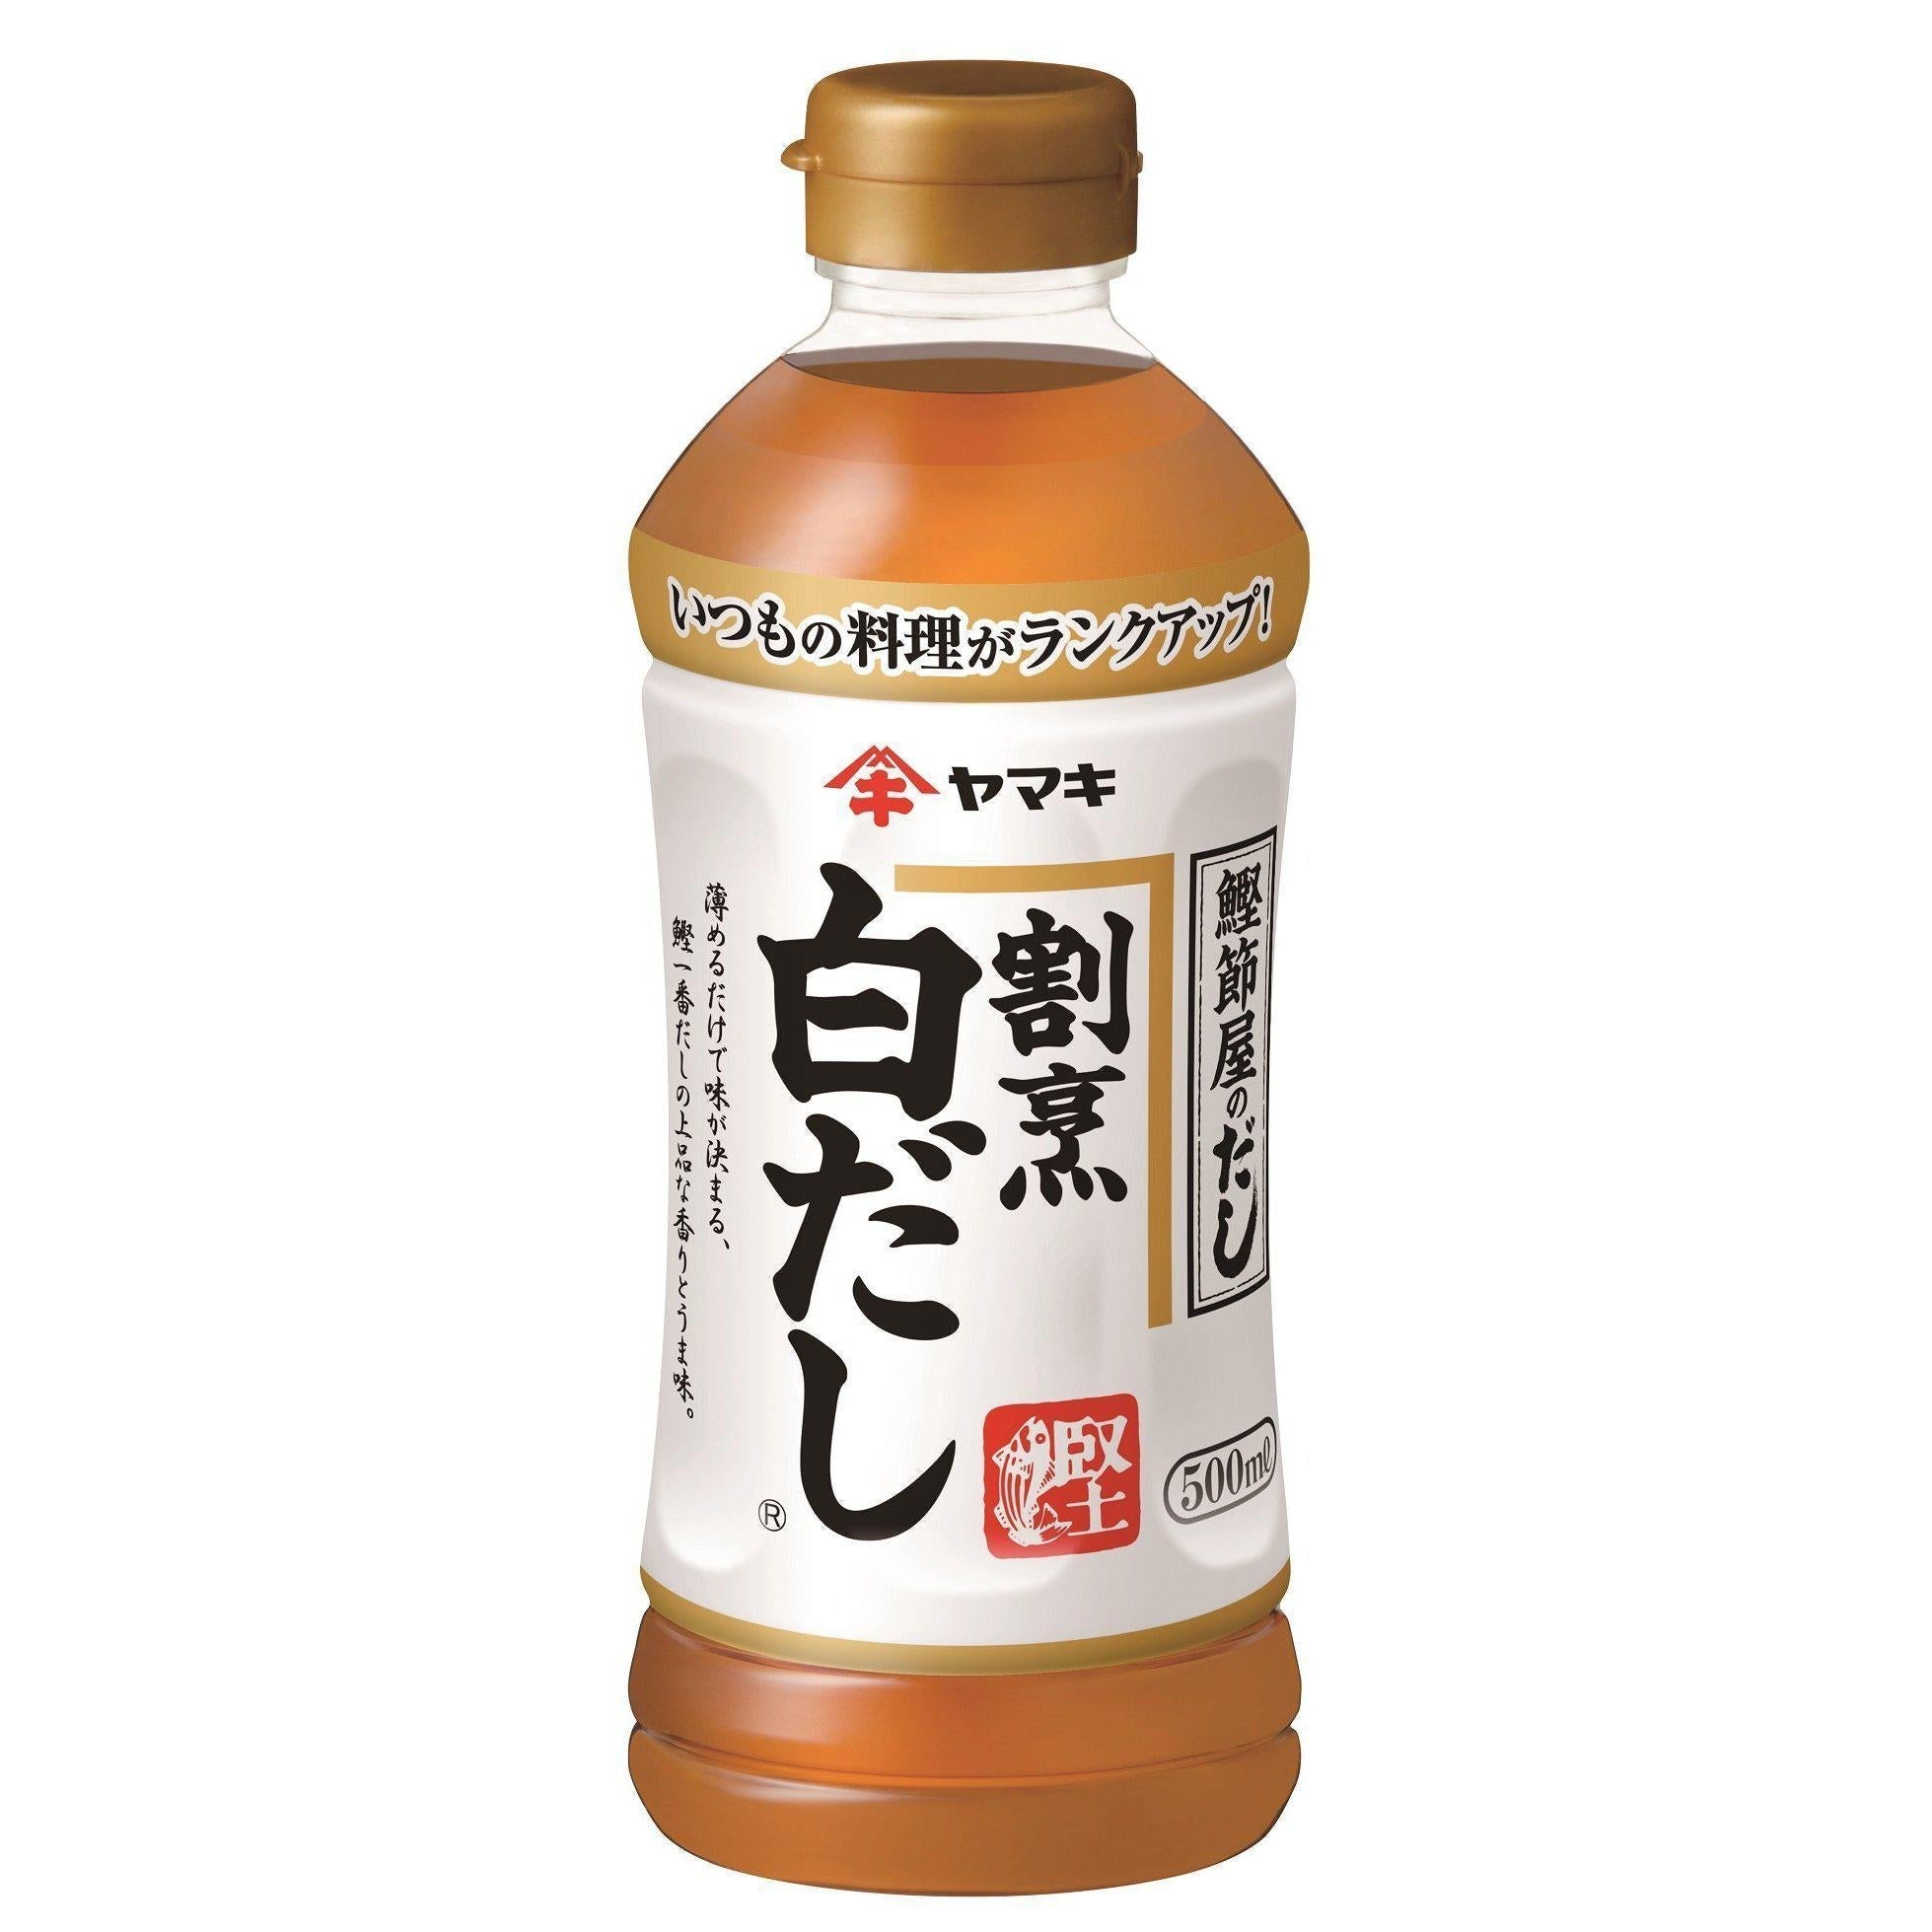 Yamaki Kappo Shiro Dashi Sauce Stock Concentrate 500ml